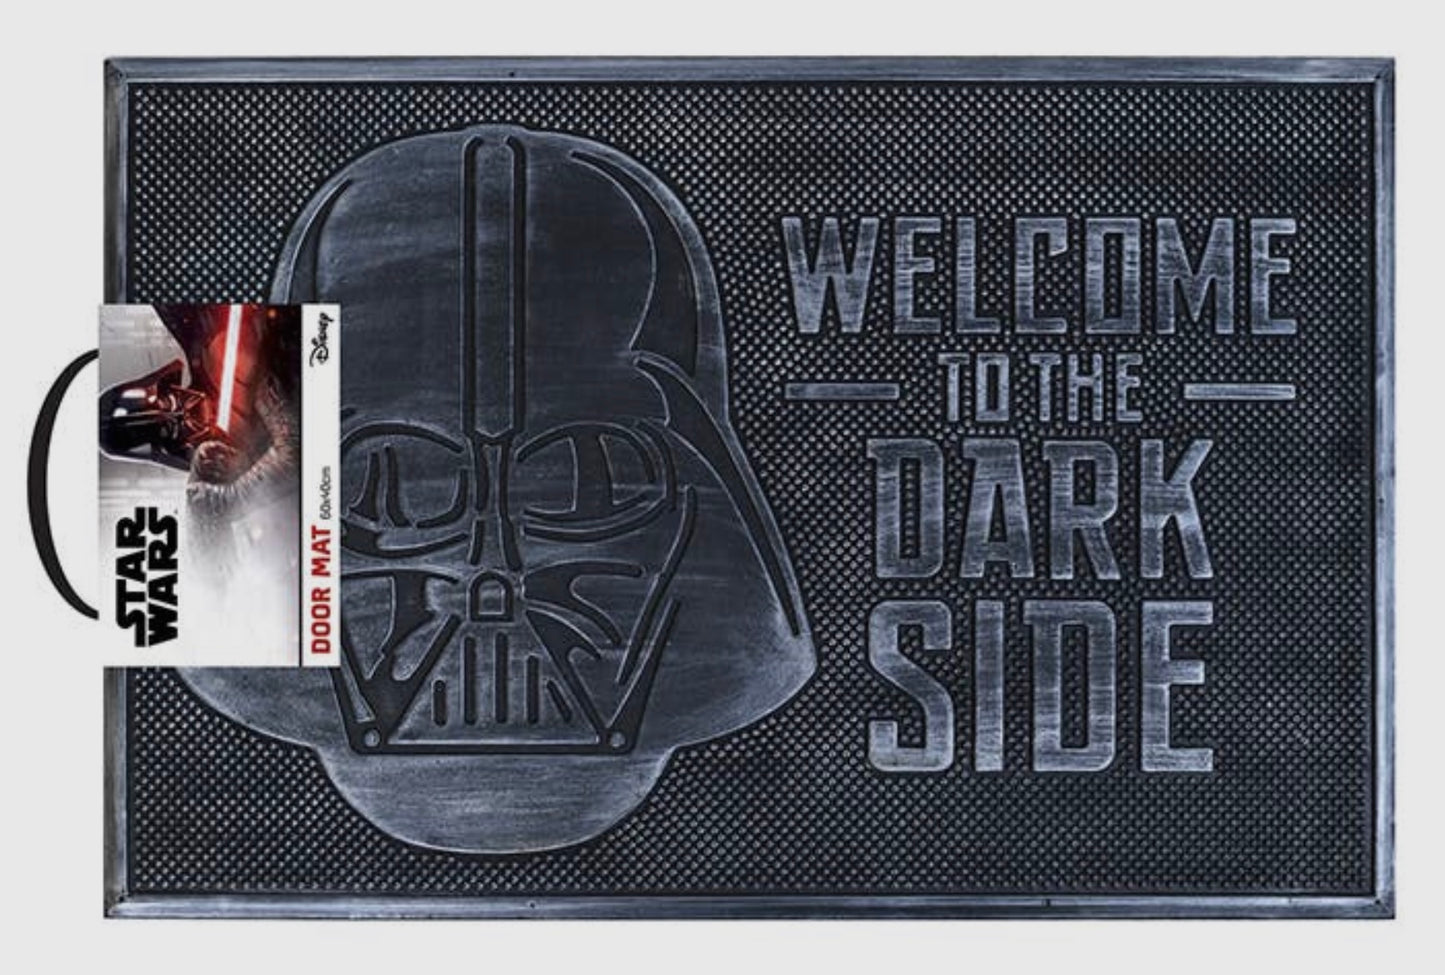 Star Wars (Willkommen auf der dunklen Seite) Gummi-Fußmatte.